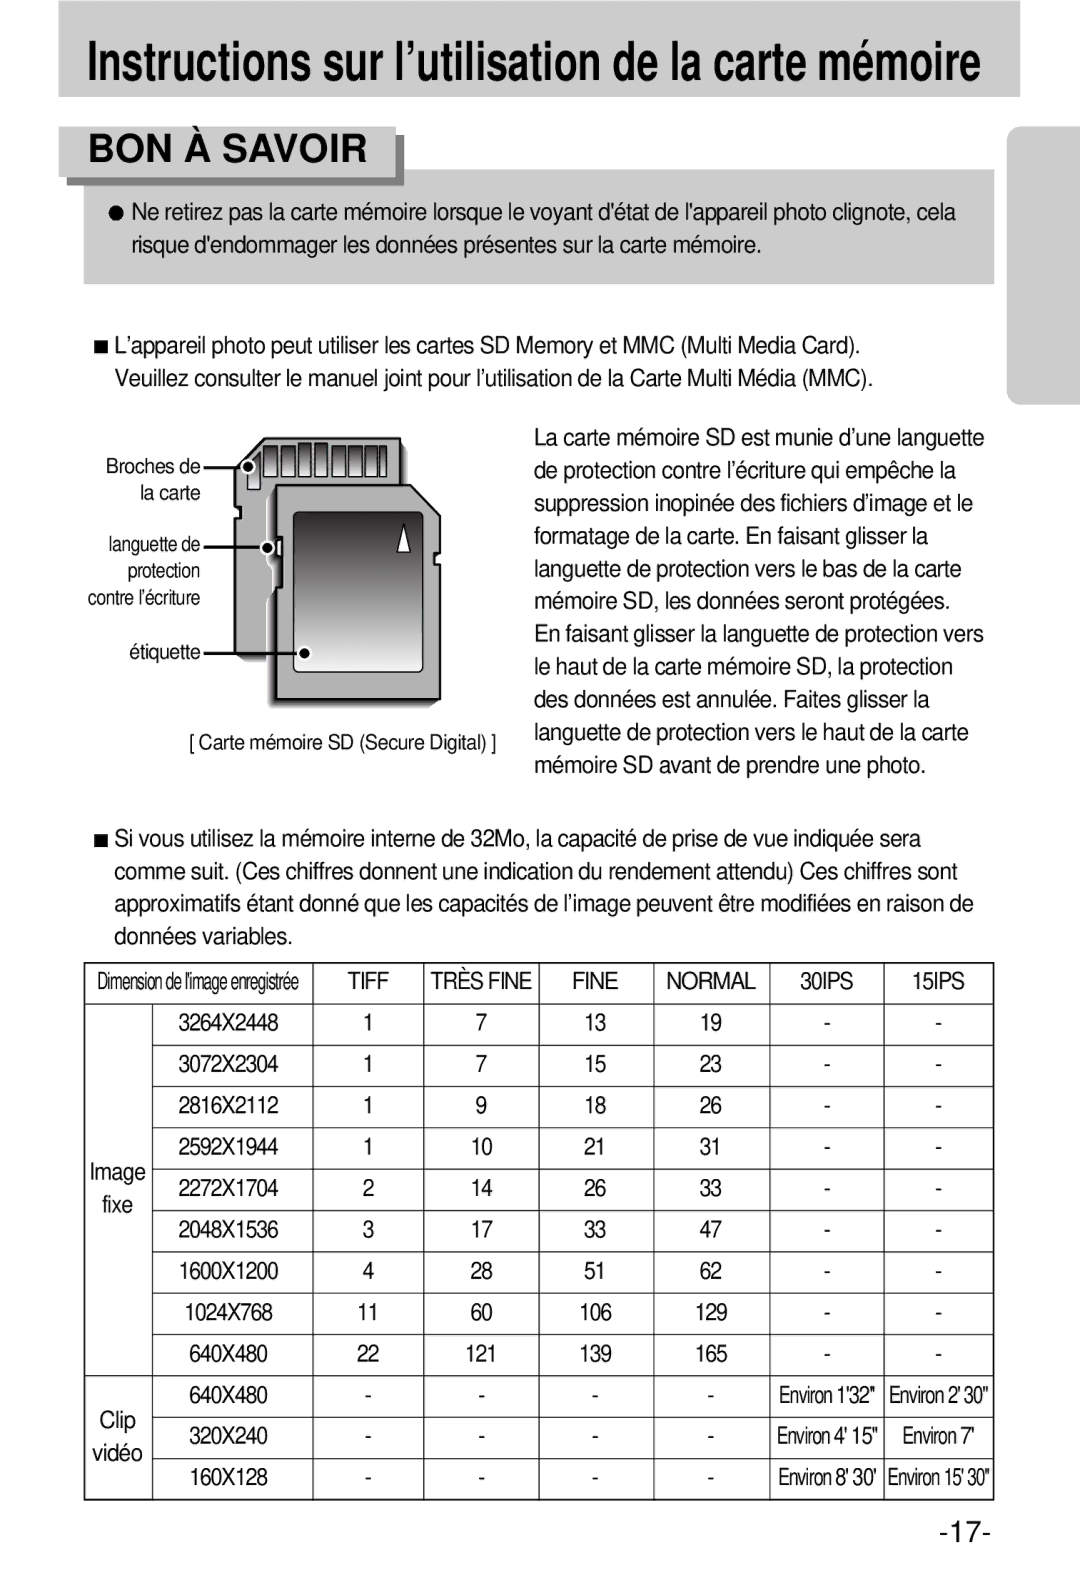 Samsung EC-V800ZSBA/FR manual Tiff, Fine Normal 30IPS 15IPS, Clip 